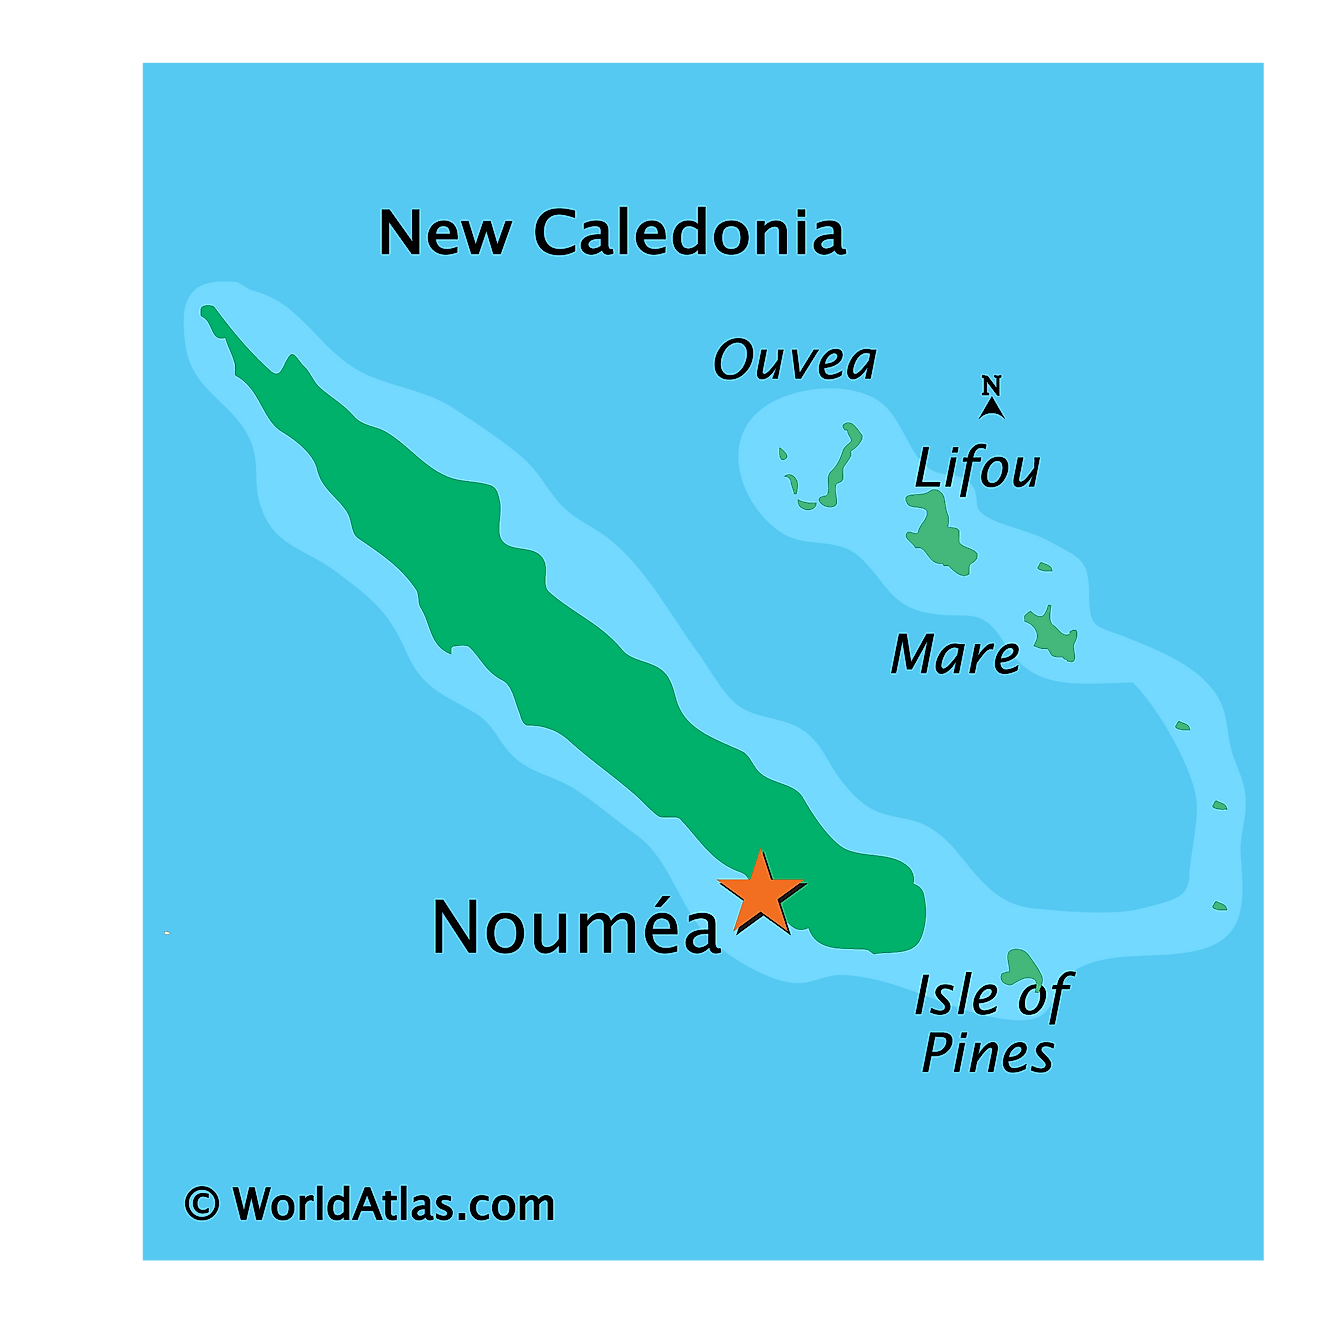 Bản đồ vật lý của New Caledonia